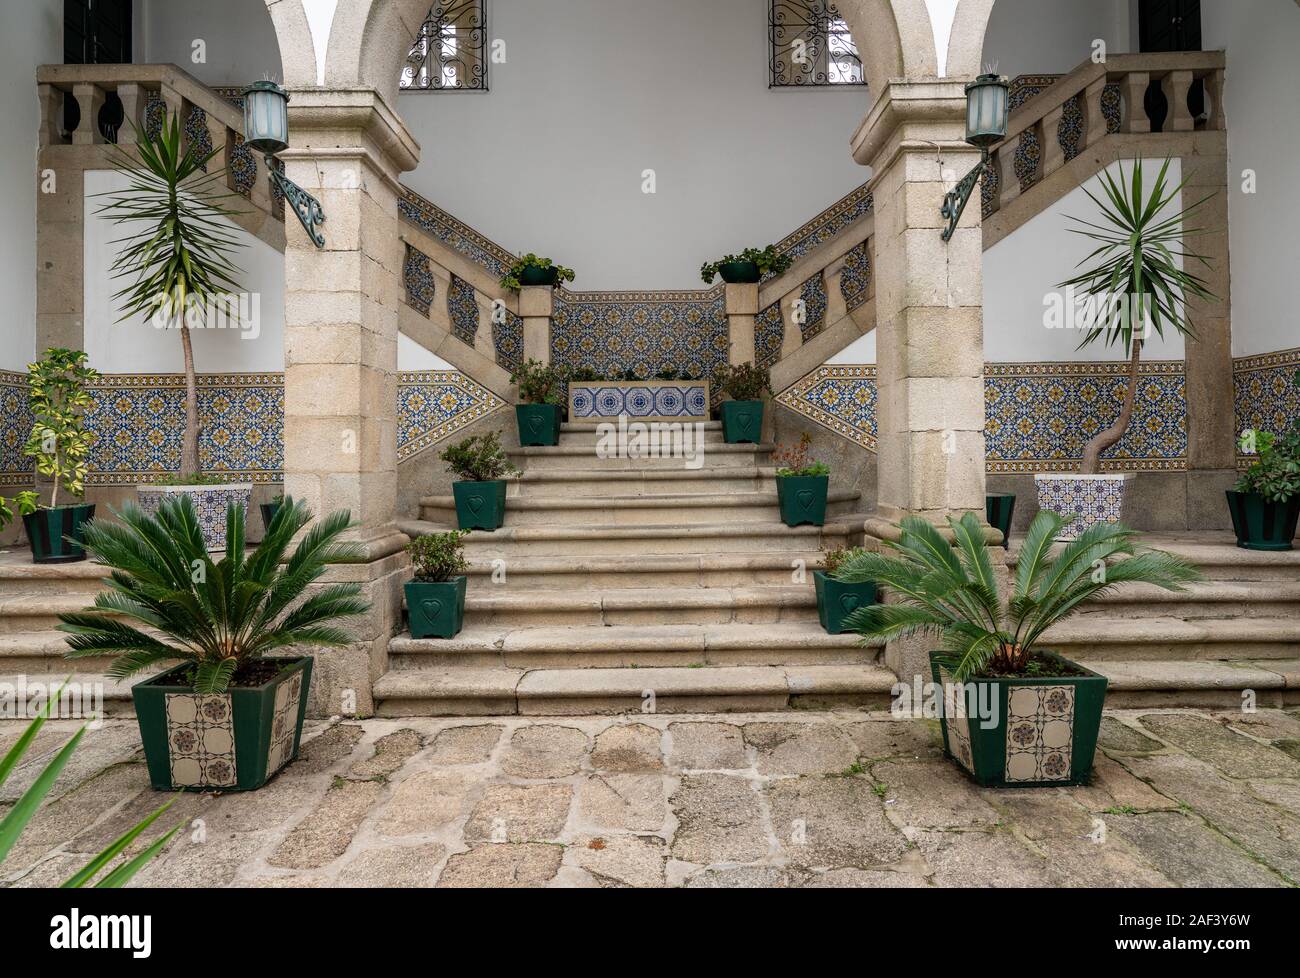 Guimaraes, Portugal - 18 August 2019: Interior courtyard of the Nossa Senhora do Carmo church with steps Stock Photo